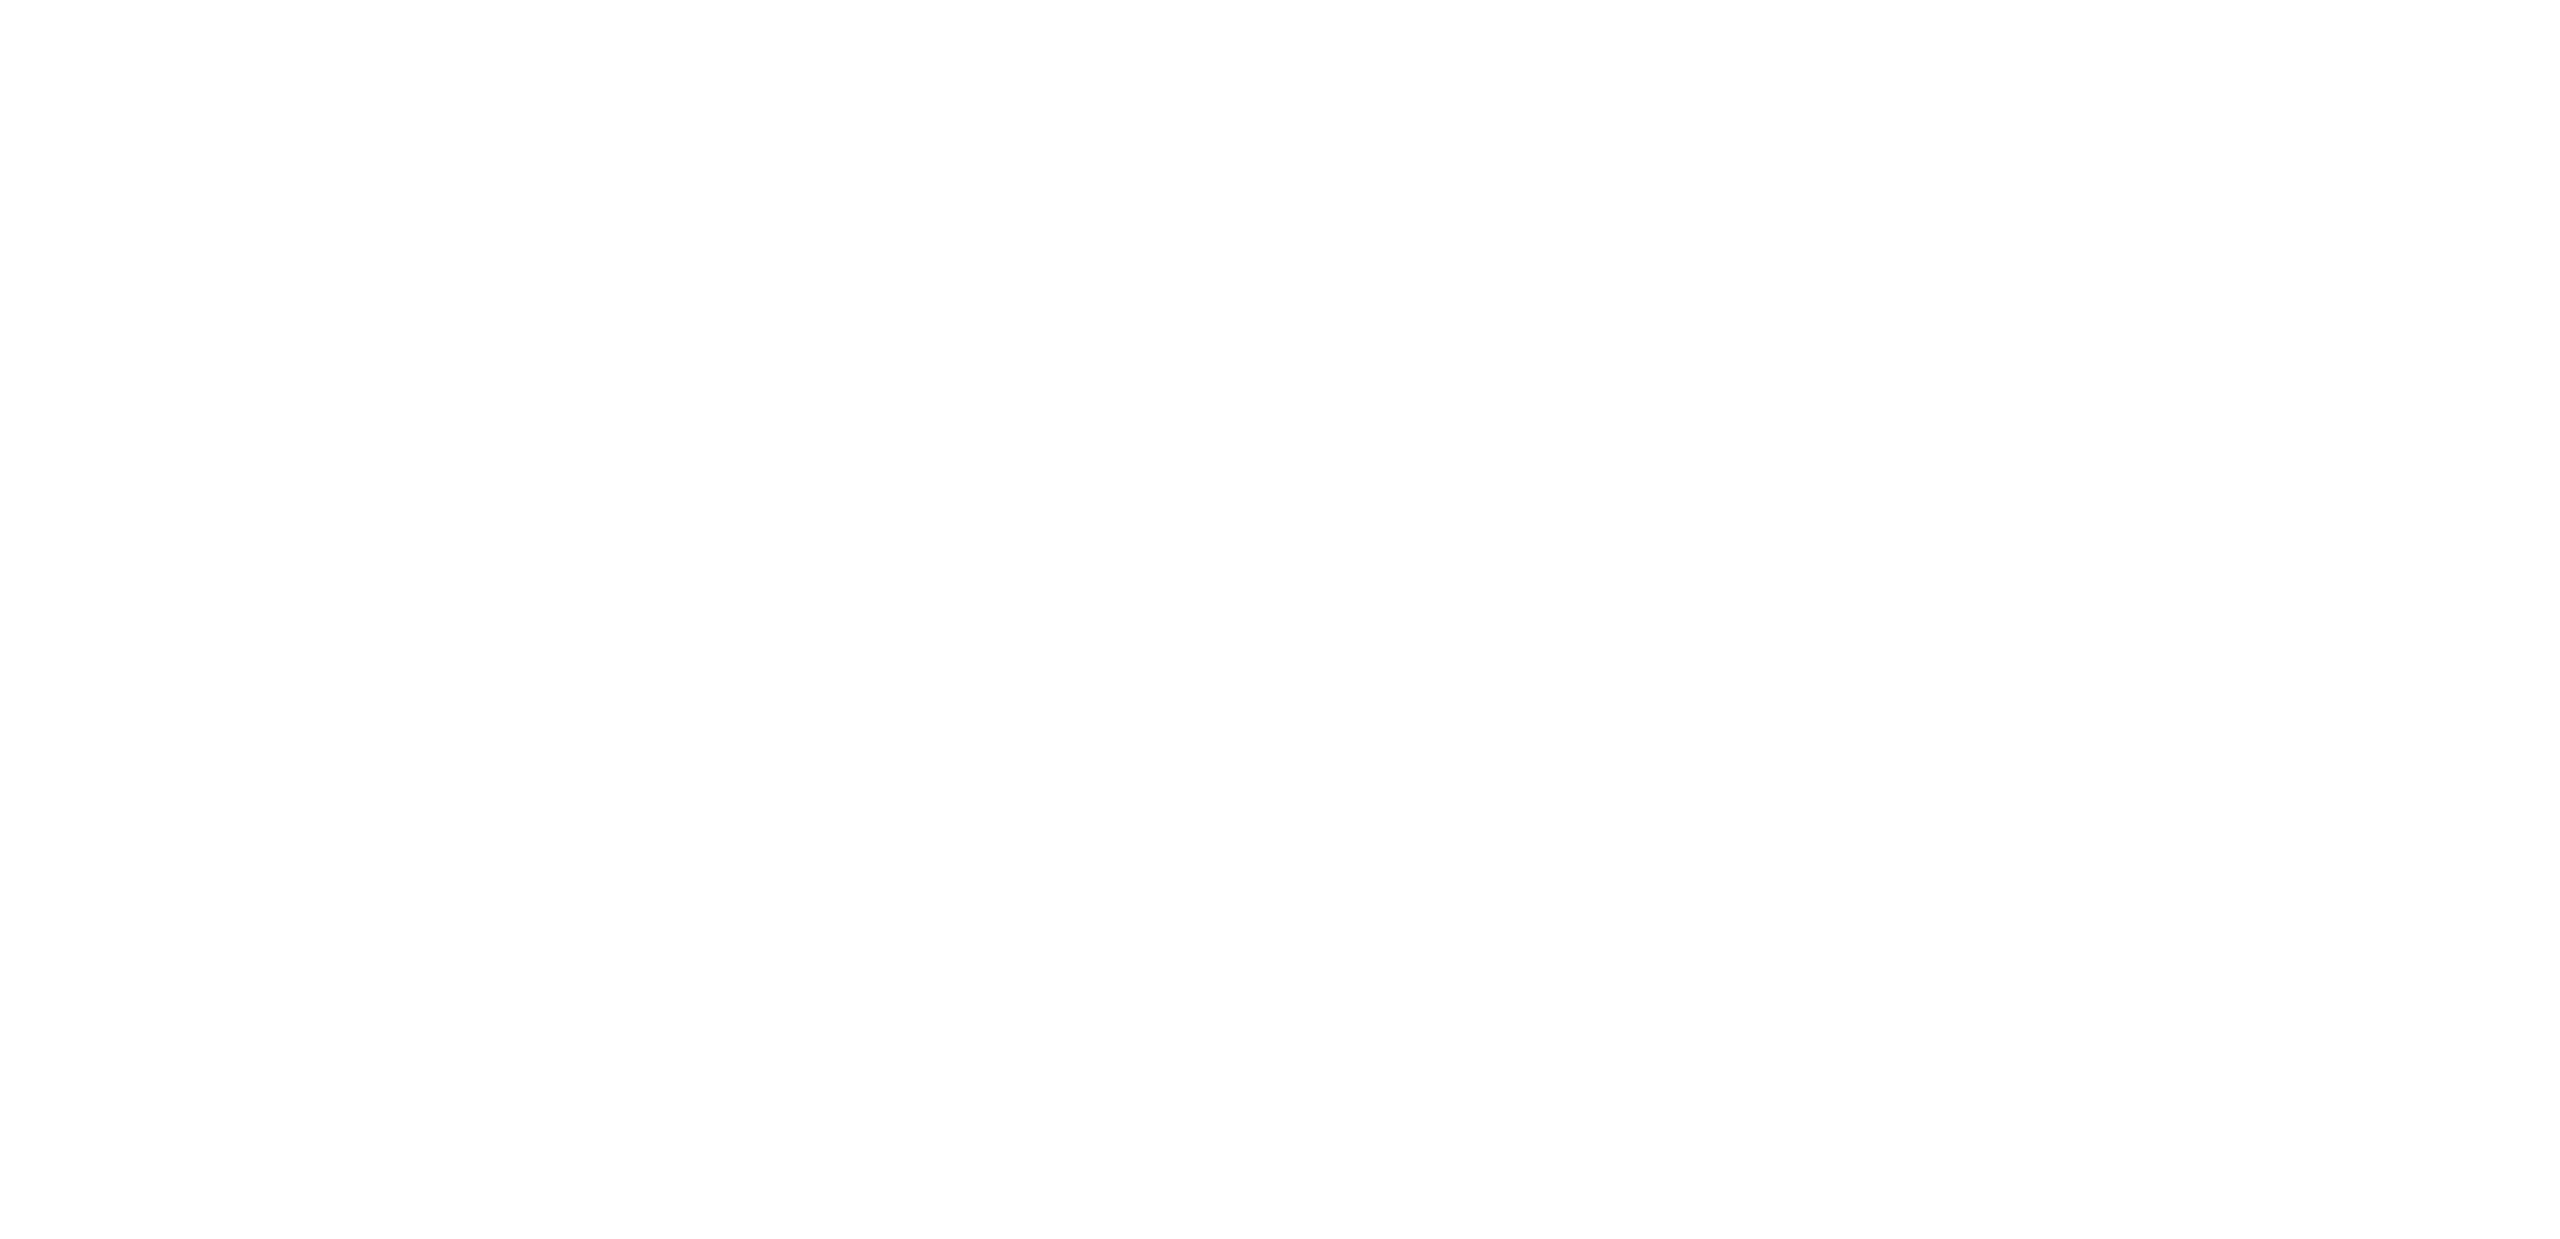 Tischlein Schmück Dich Logo